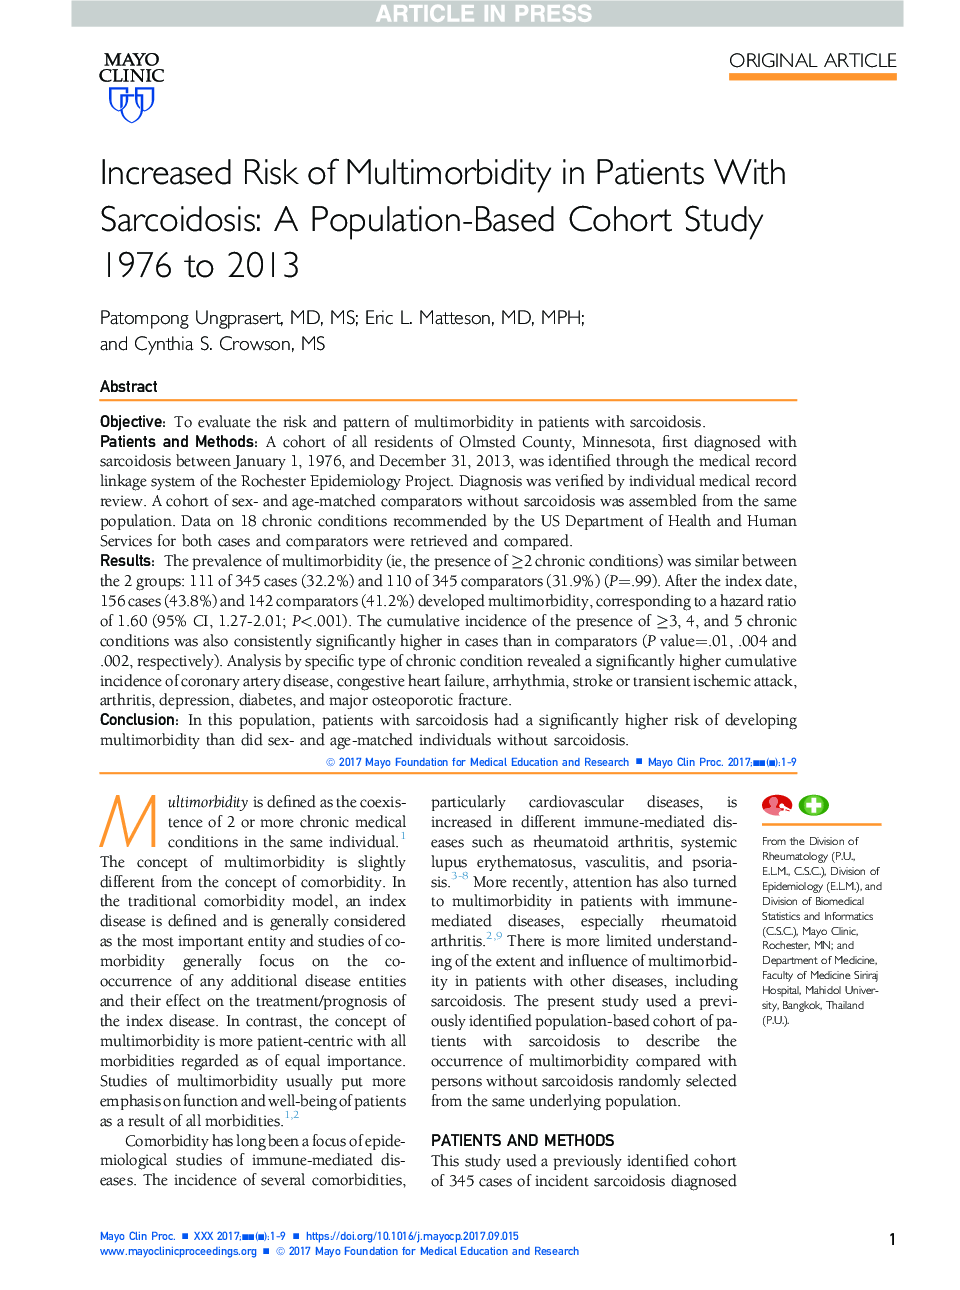 افزایش خطر ابتلا به بیماری های چندگانه در بیماران مبتلا به سارکوئیدوز: مطالعات گروهی مبتنی بر جمعیت سال های 1976 تا 2013 